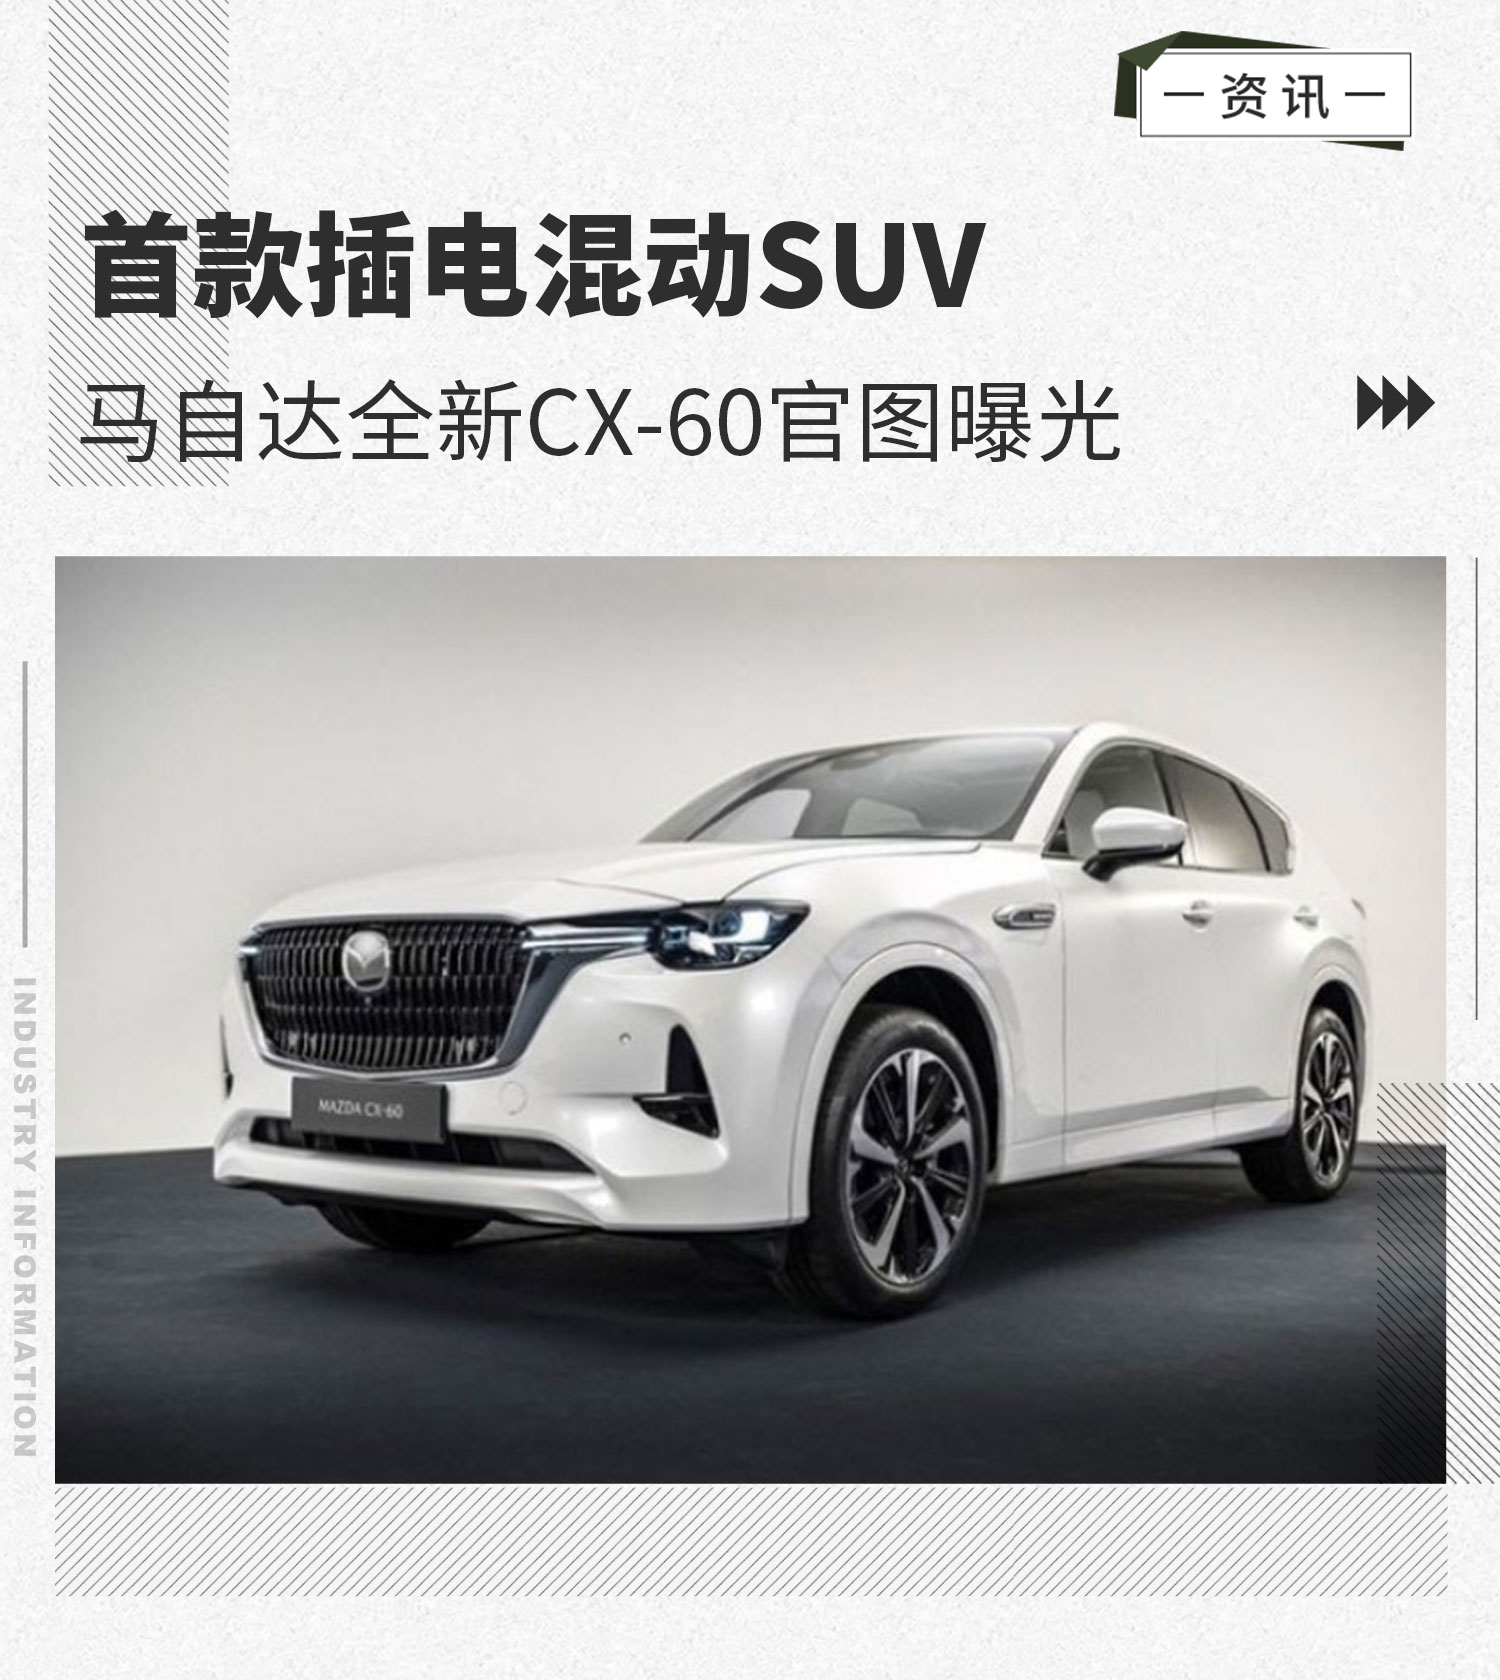 首款插电混动SUV 马自达全新CX-60官图曝光